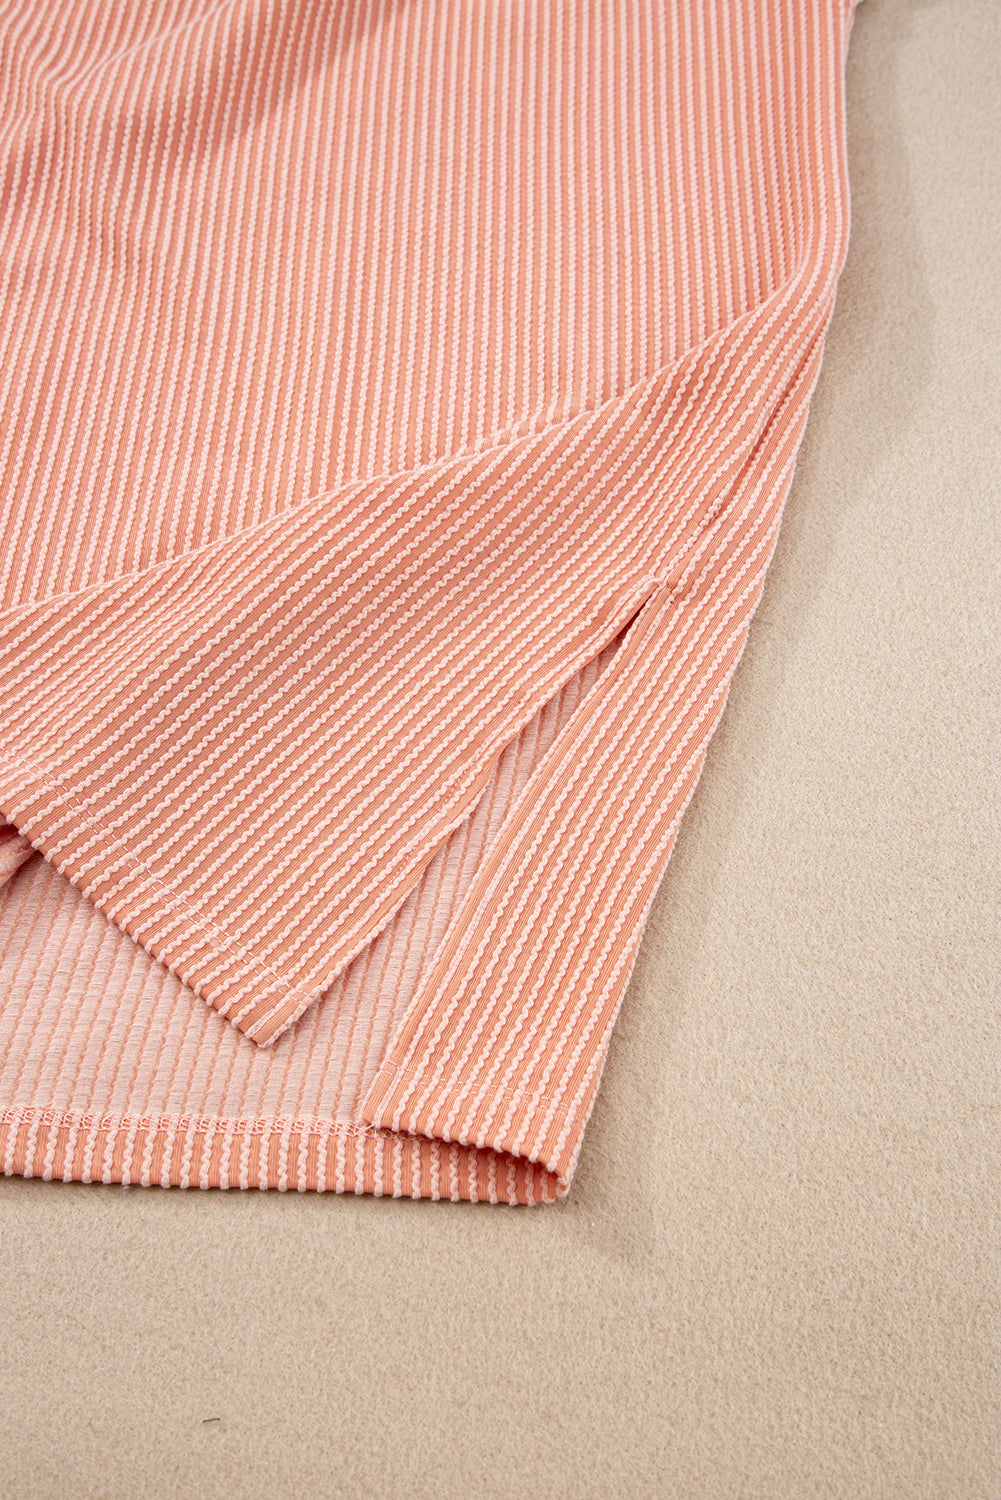 Rožnata majica s kratkimi rokavi v veliki velikosti z rebrastimi barvnimi bloki